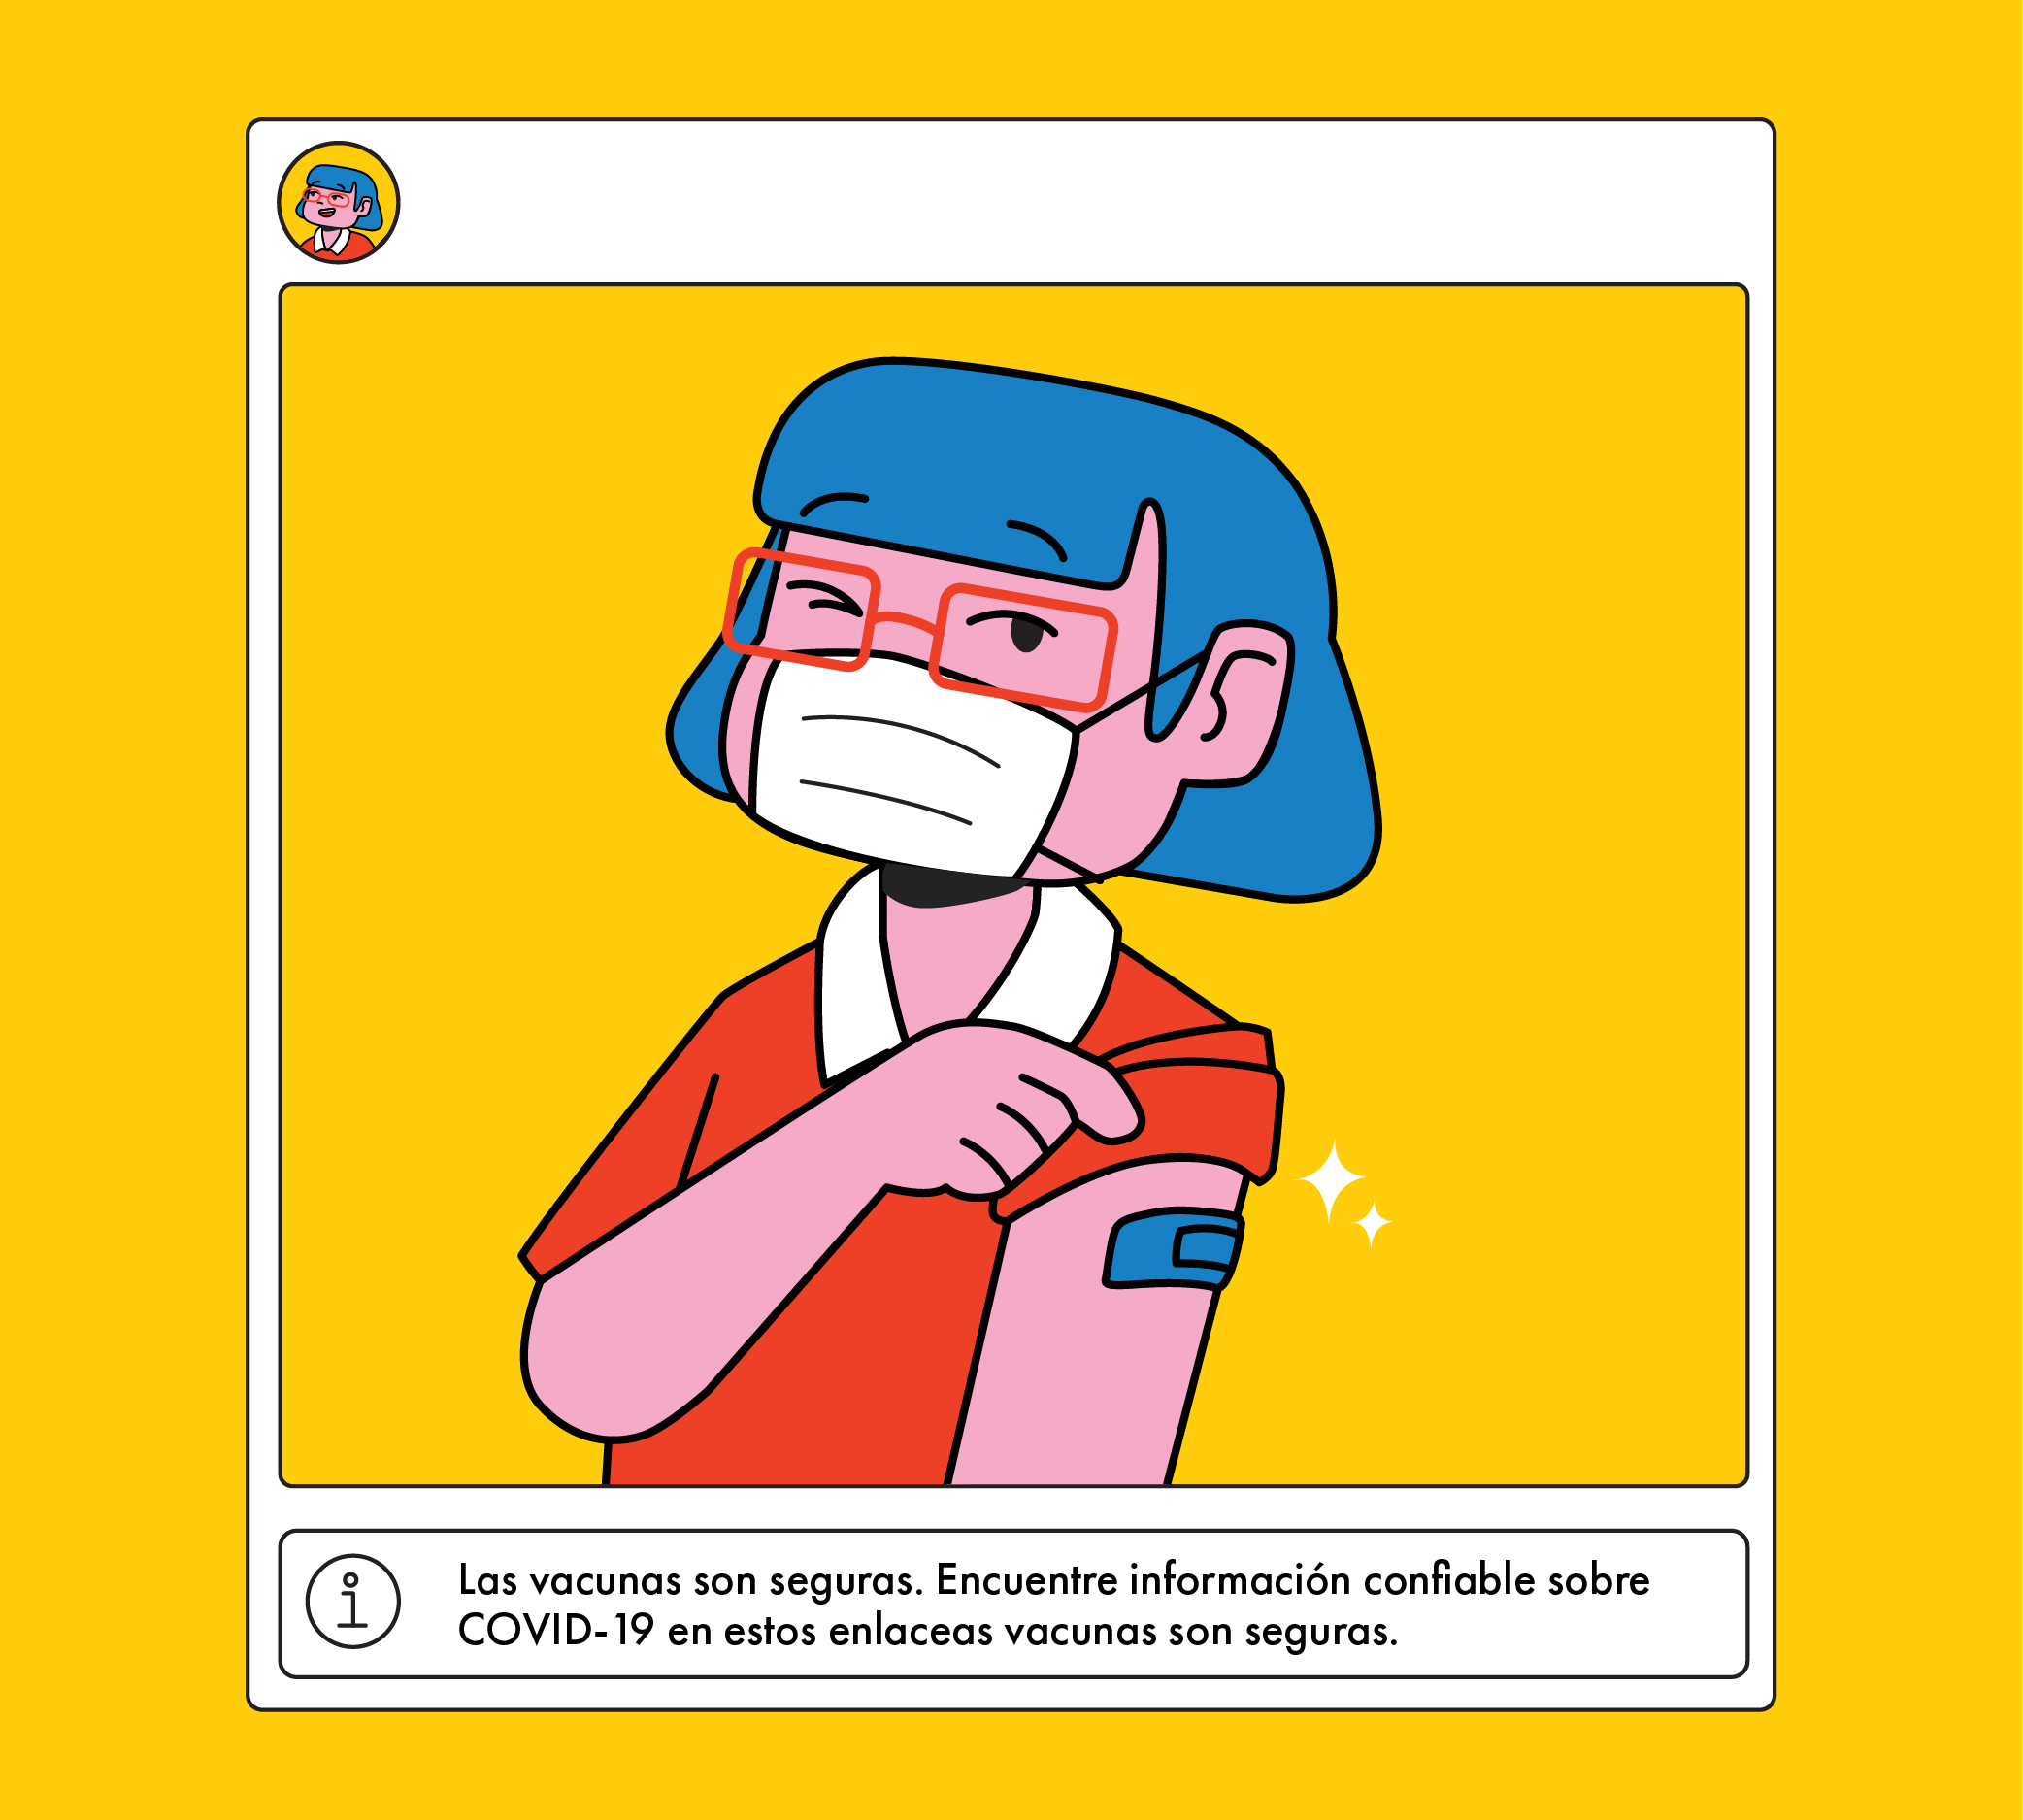 Ilustración de persona que se pone la vacuna. Se incluye el anuncio automático de Instagram que señala que las vacunas son seguras.